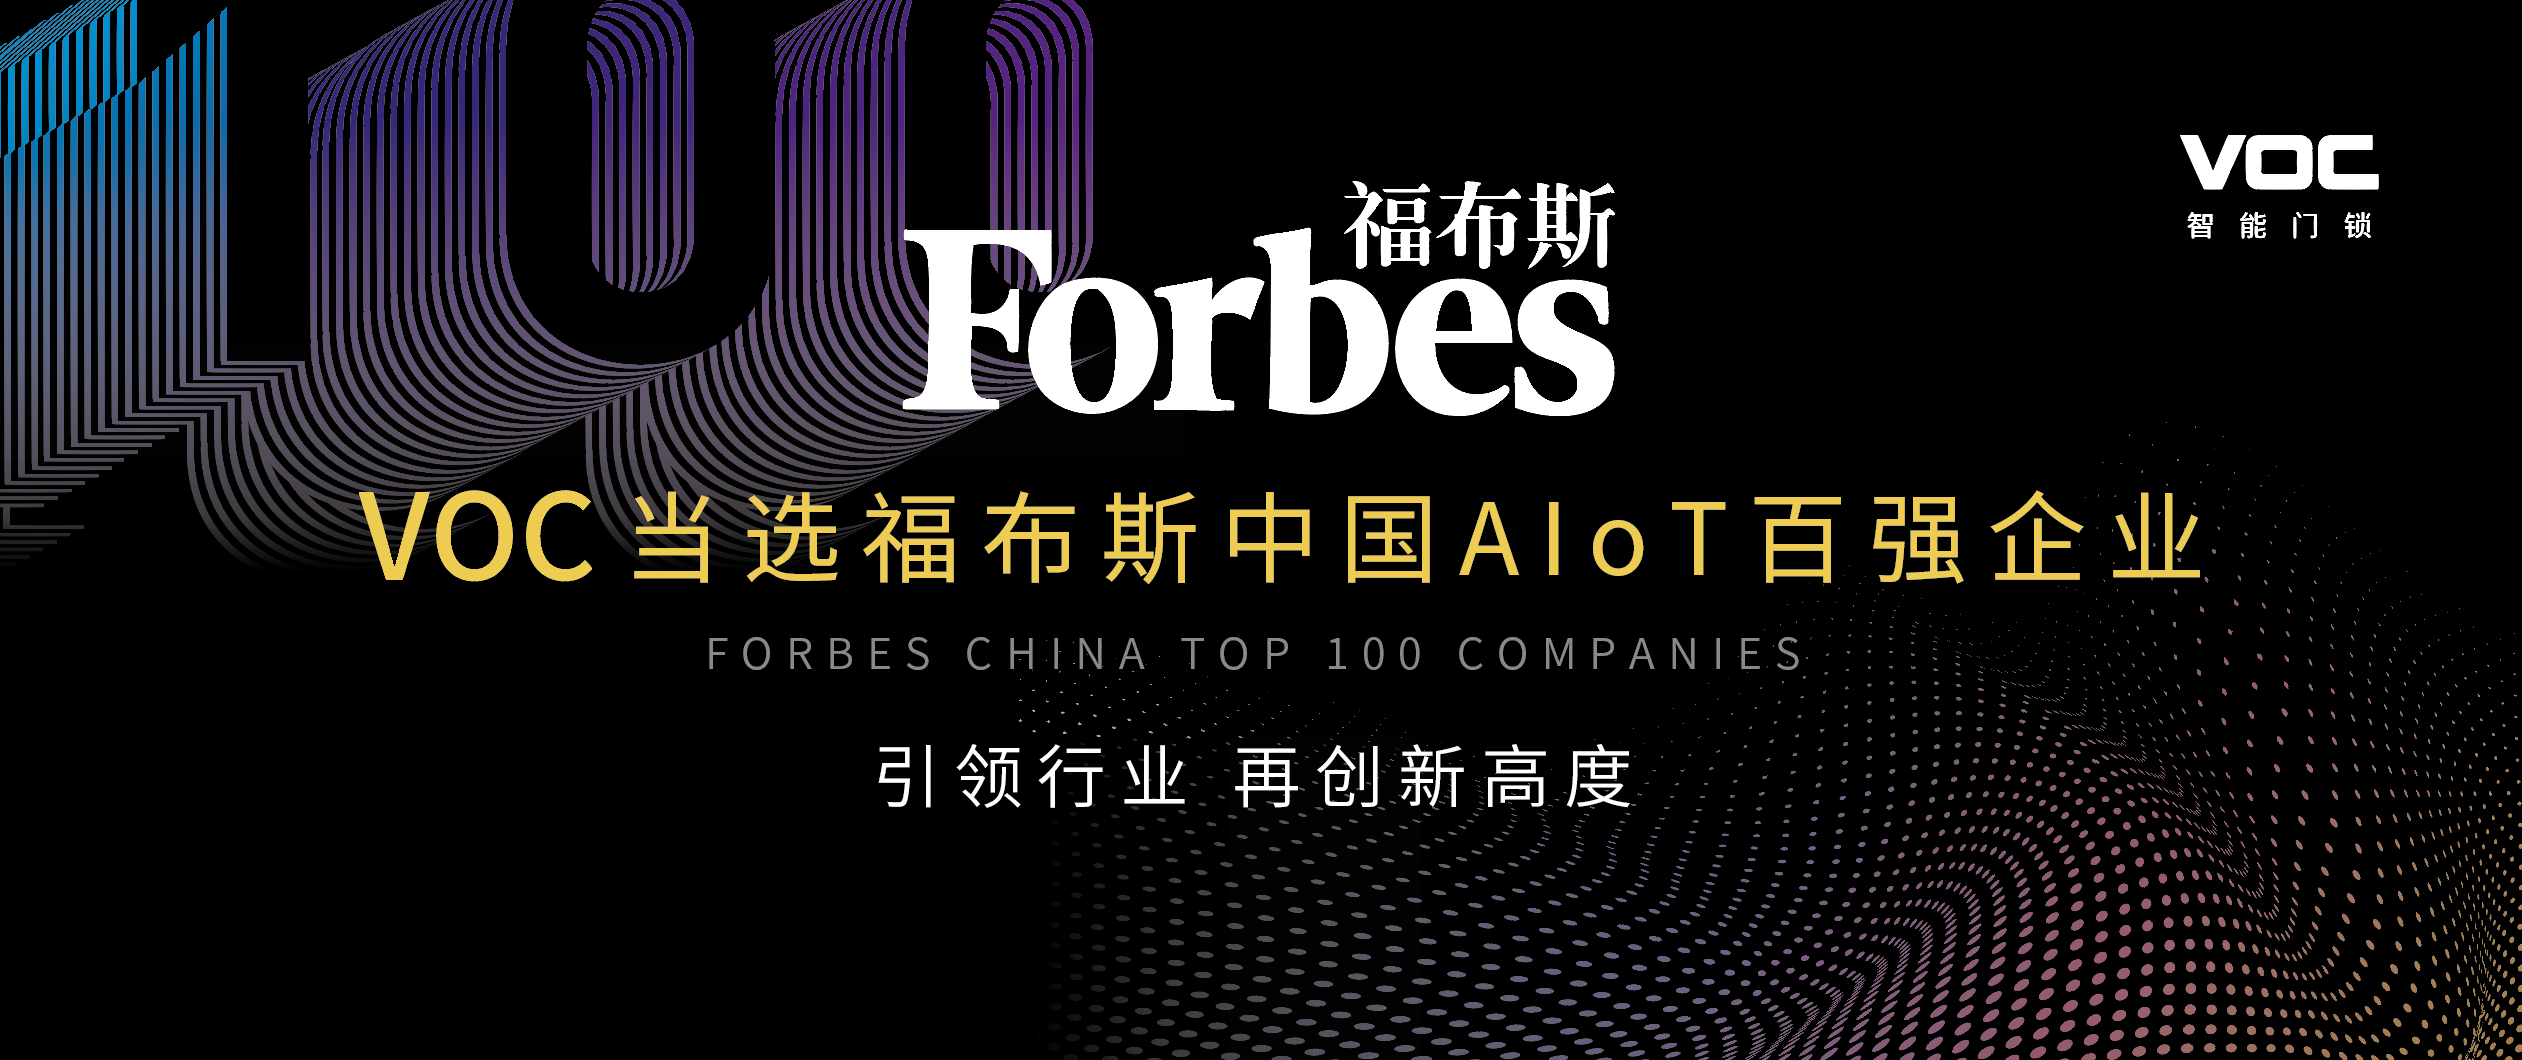 以实力证明领导力，VOC当选福布斯中国AIoT百强企业！